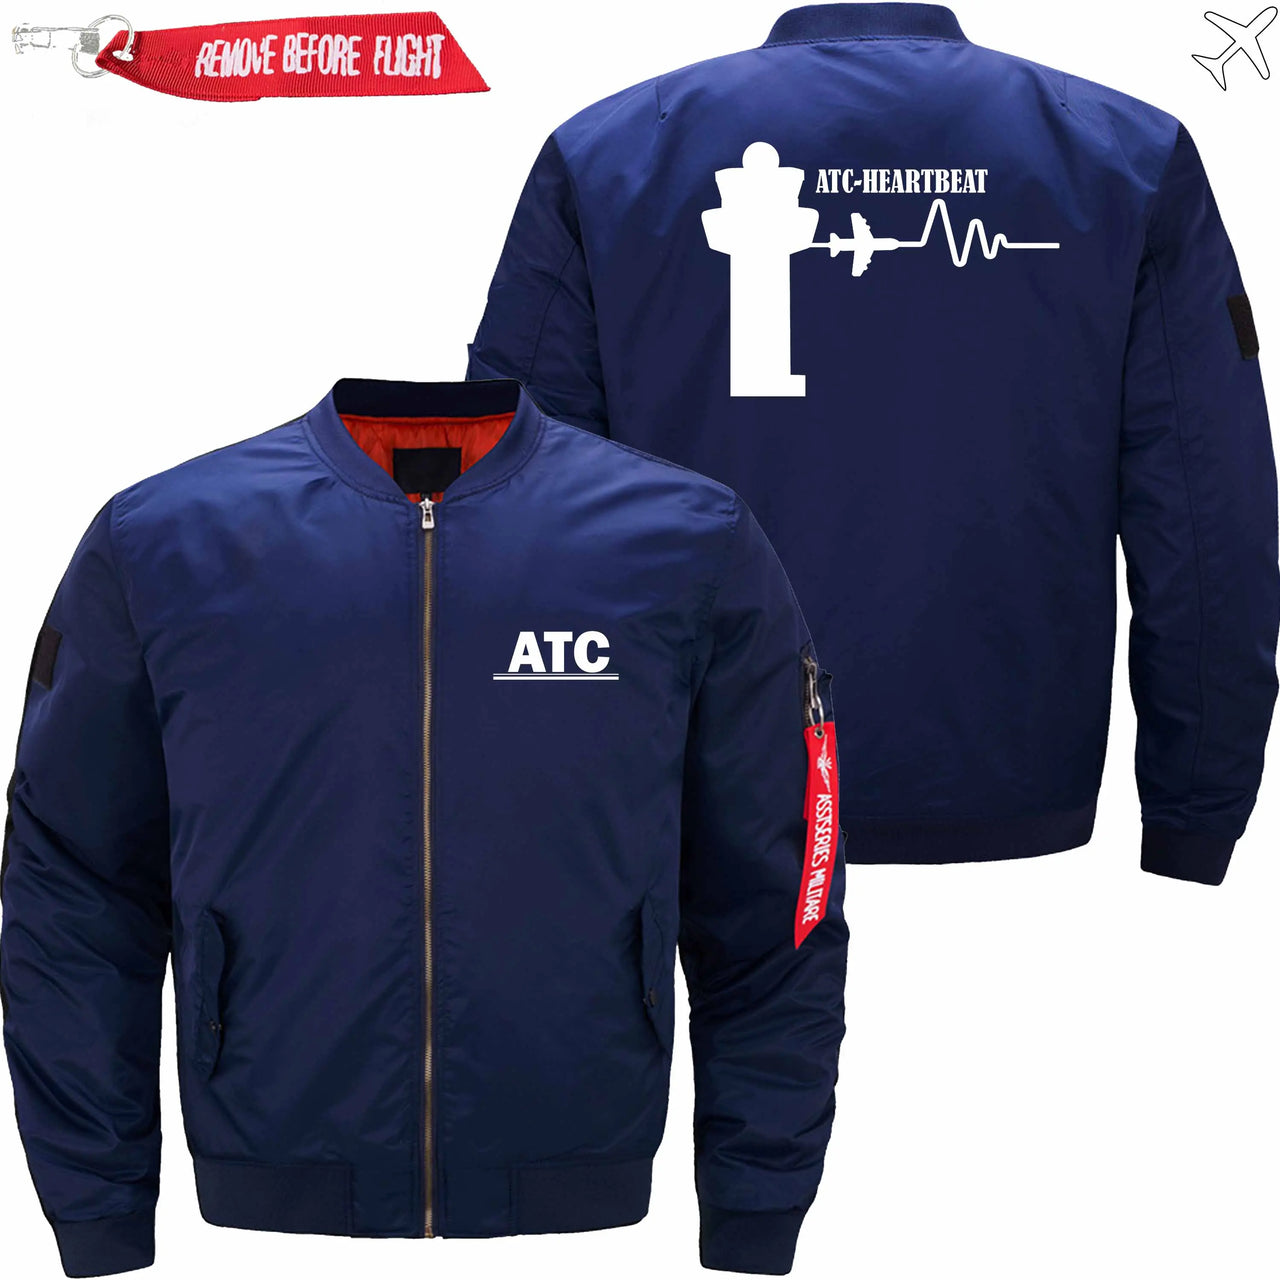 ATC- HEARTBEAT - JACKET THE AV8R